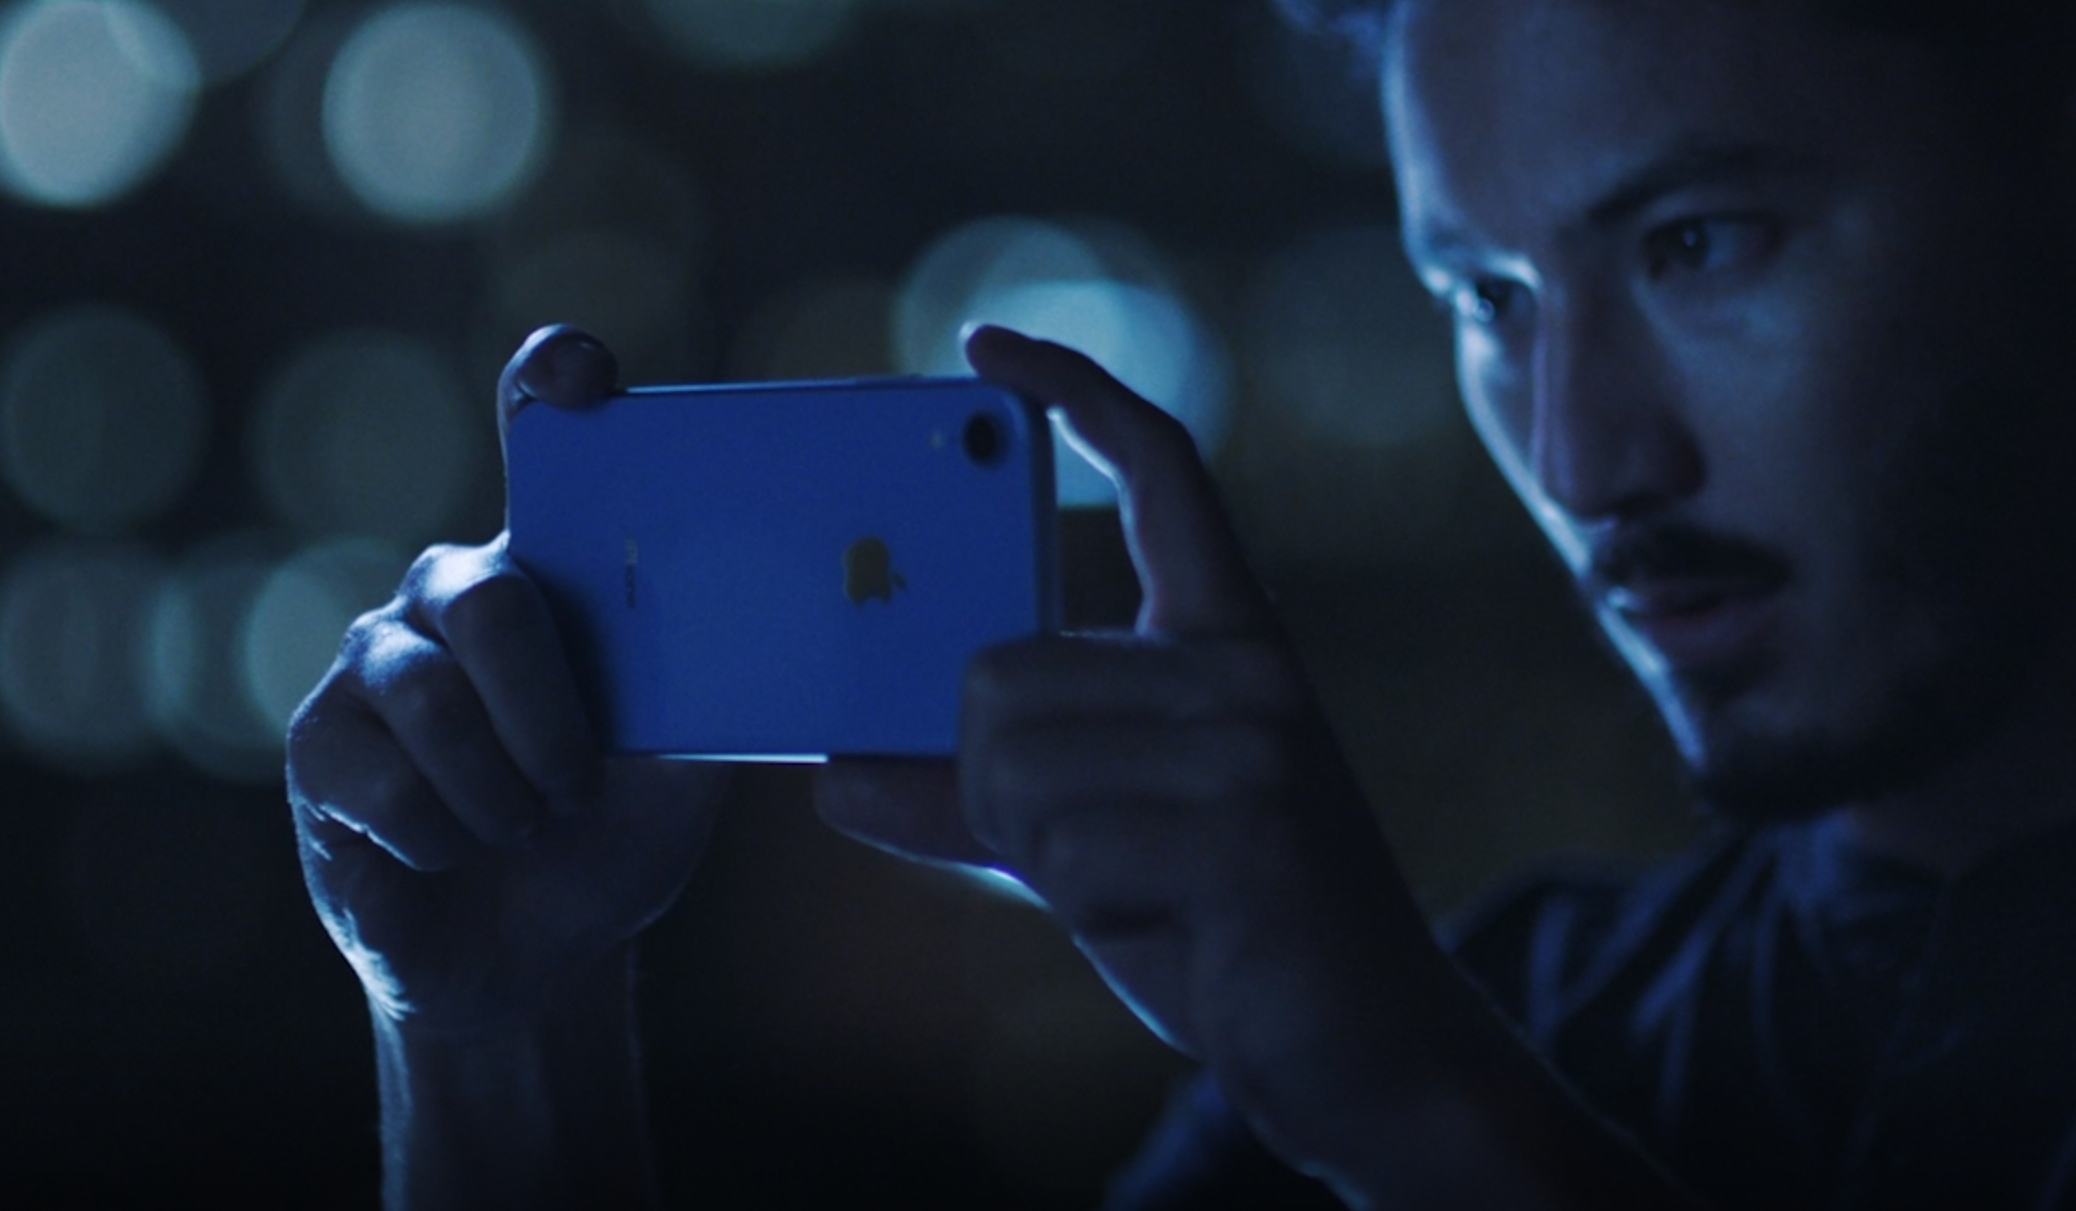 Apples "billig-iPhone" er nå mer populær enn Xs, men som vi spådde...